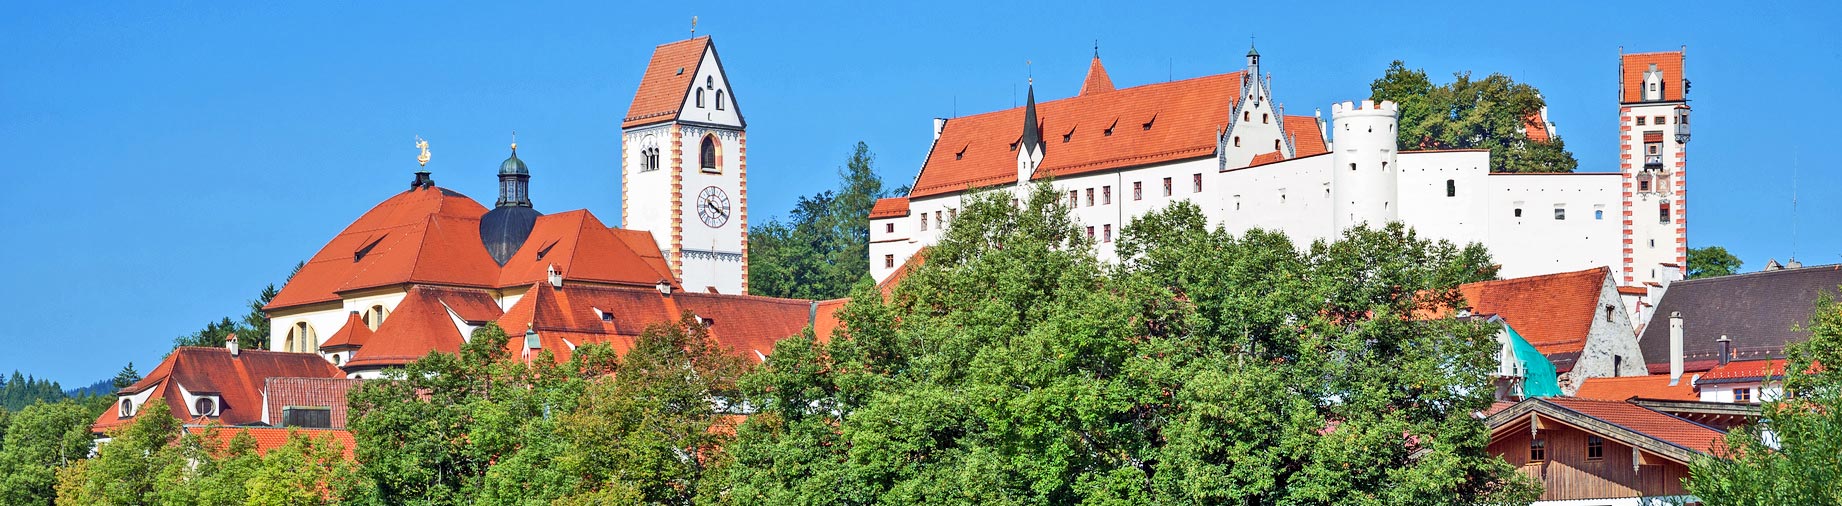 Füssen im Allgäu - Blick vom Lech auf das Kloster St. Mang und Hohes Schloss